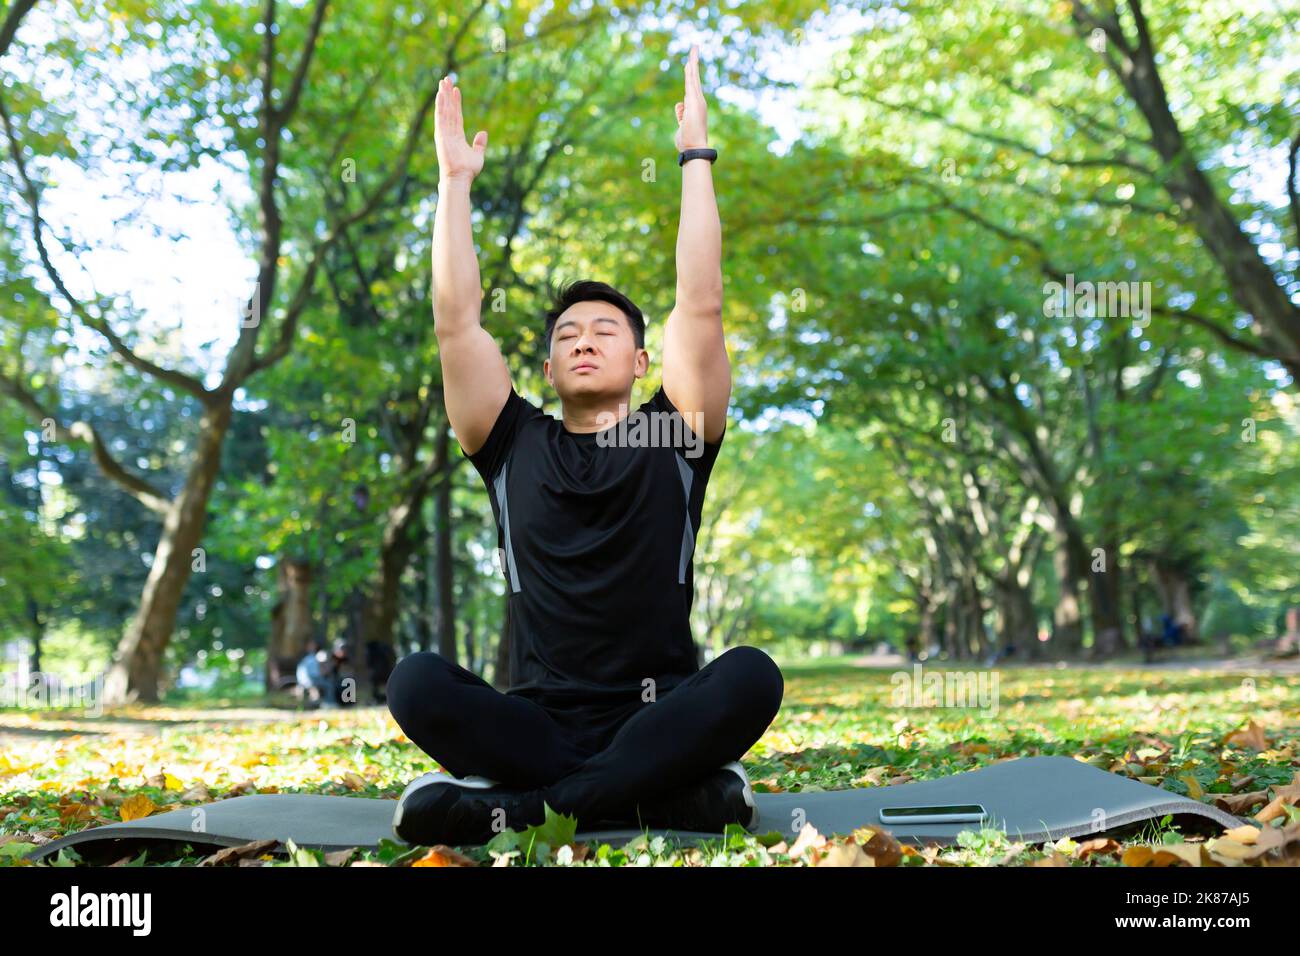 Homme asiatique dans le parc sur un tapis de sport assis dans la position lotus, sportif effectue des exercices de respiration par jour ensoleillé, homme dans un costume de sport repose après des exercices physiques et de remise en forme Banque D'Images